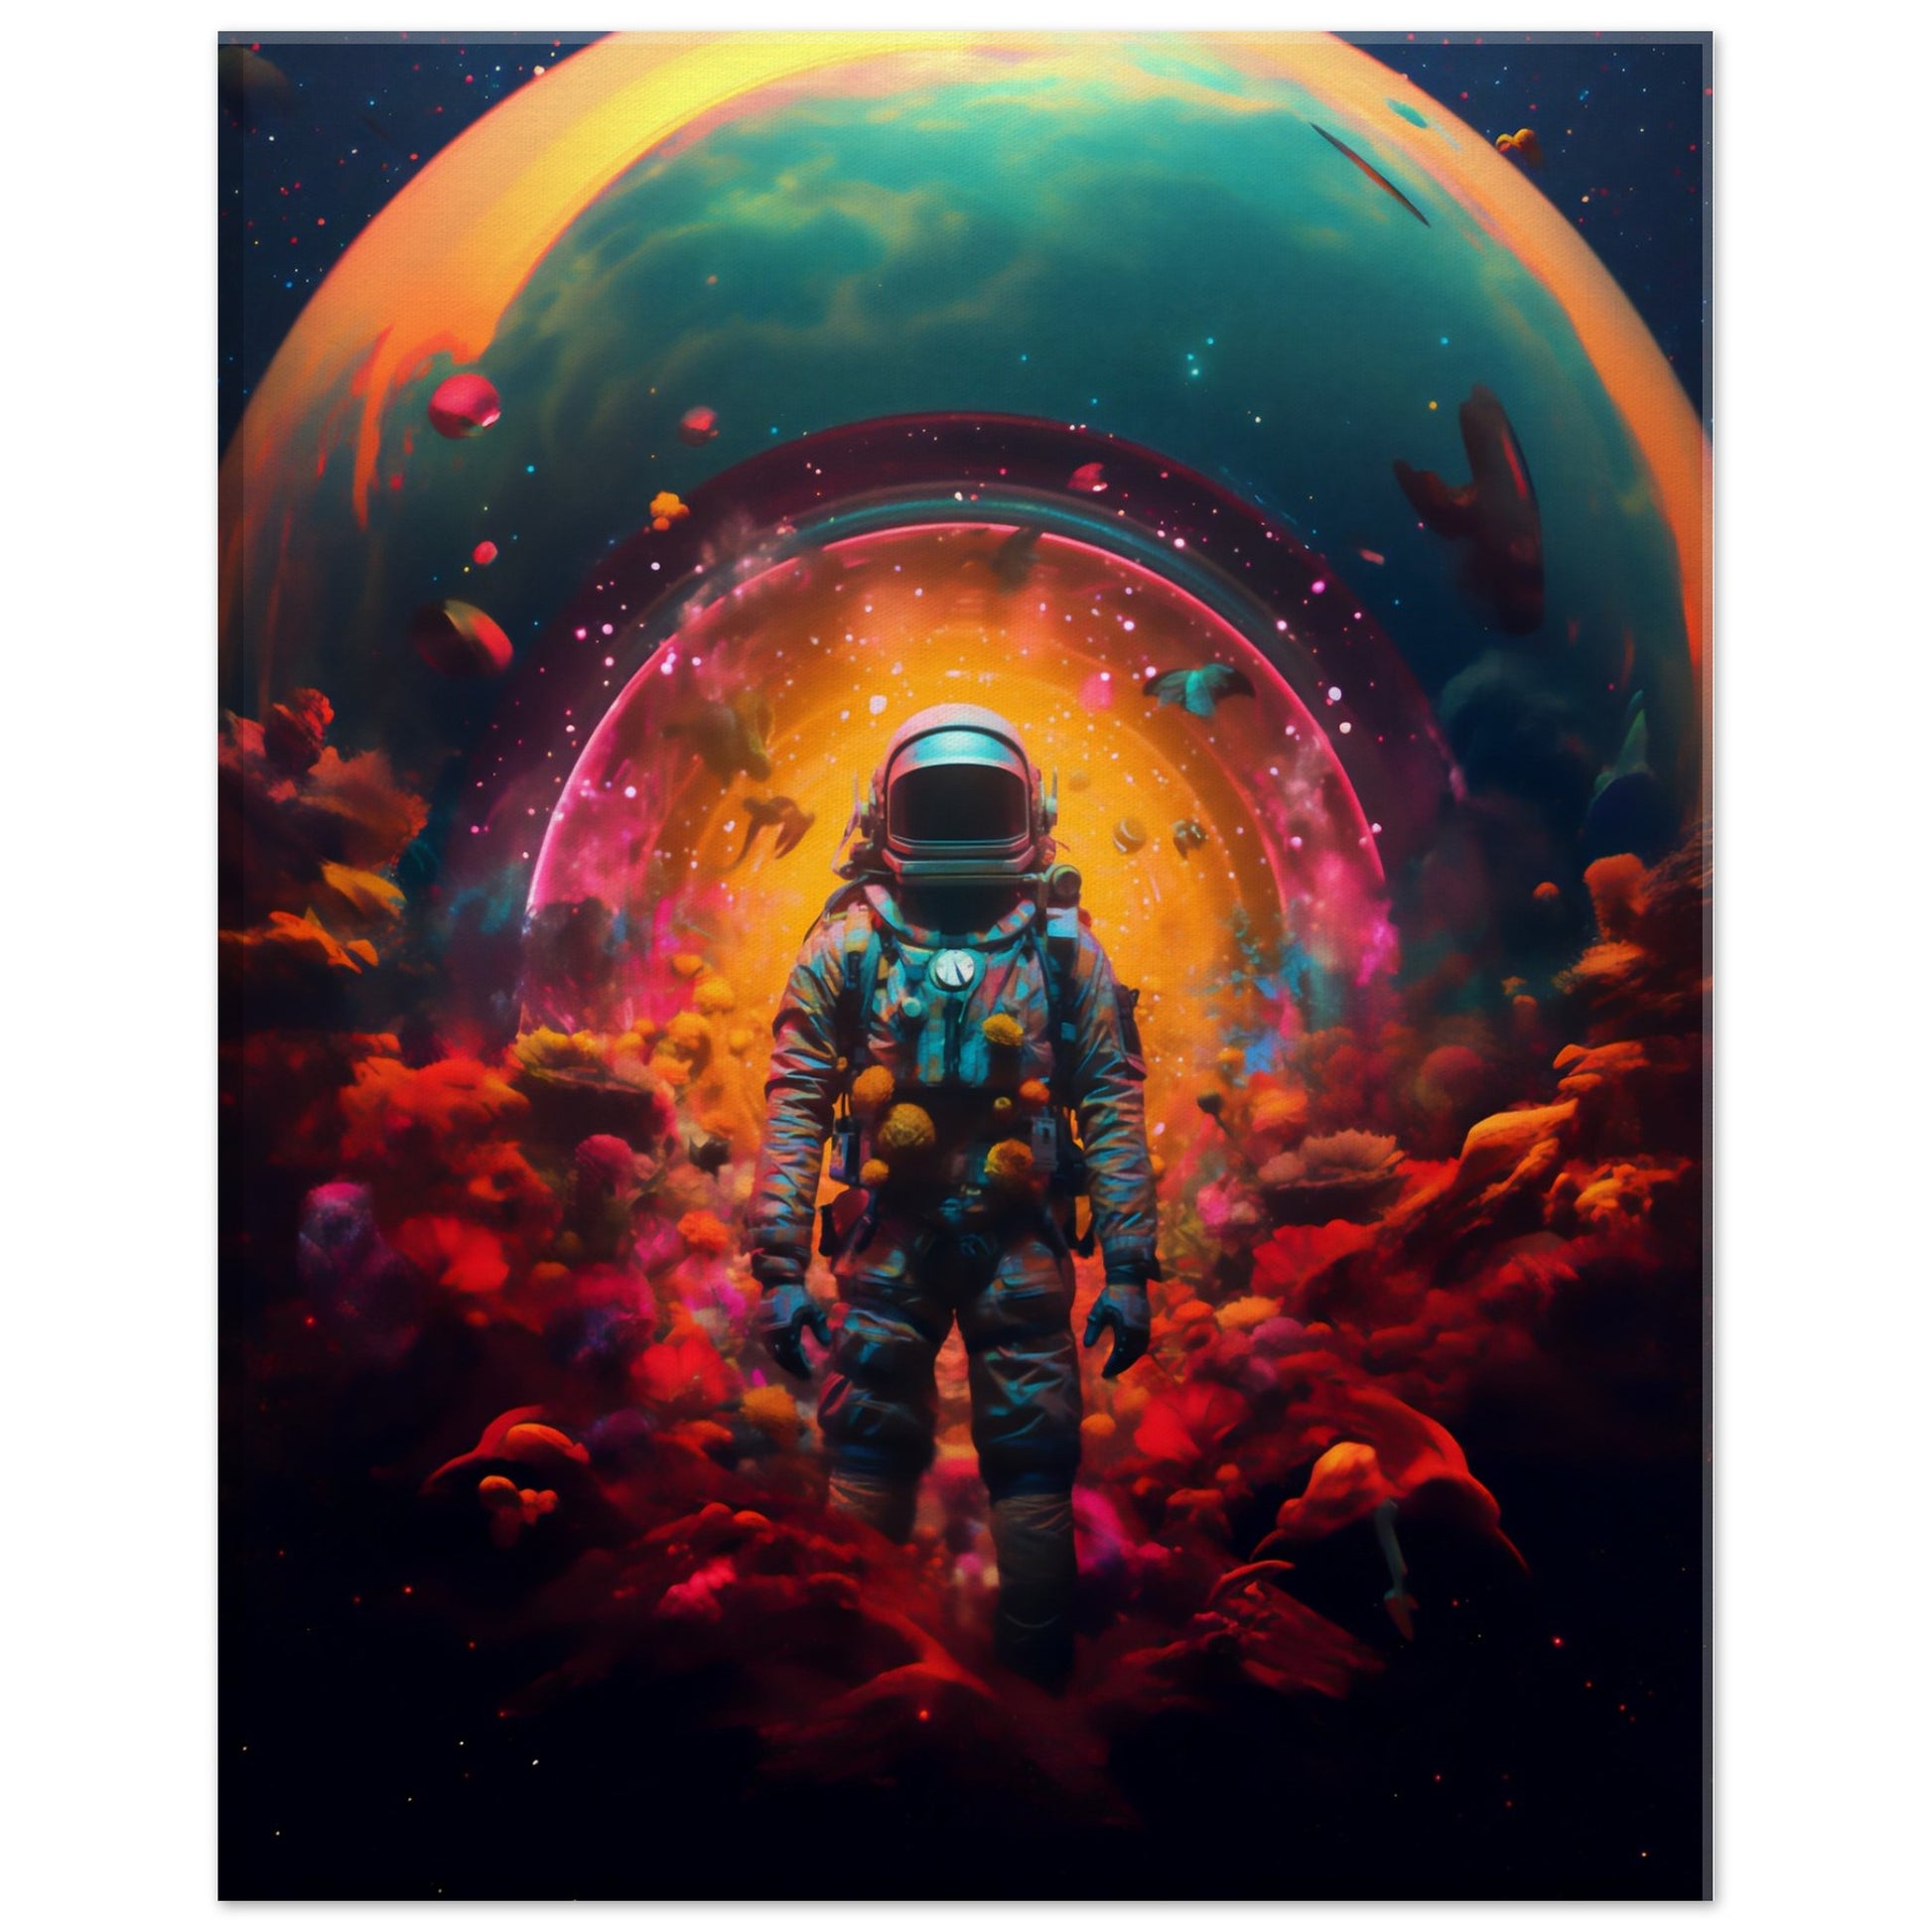 Astronaut psychedelic art - "Cosmic Trip"